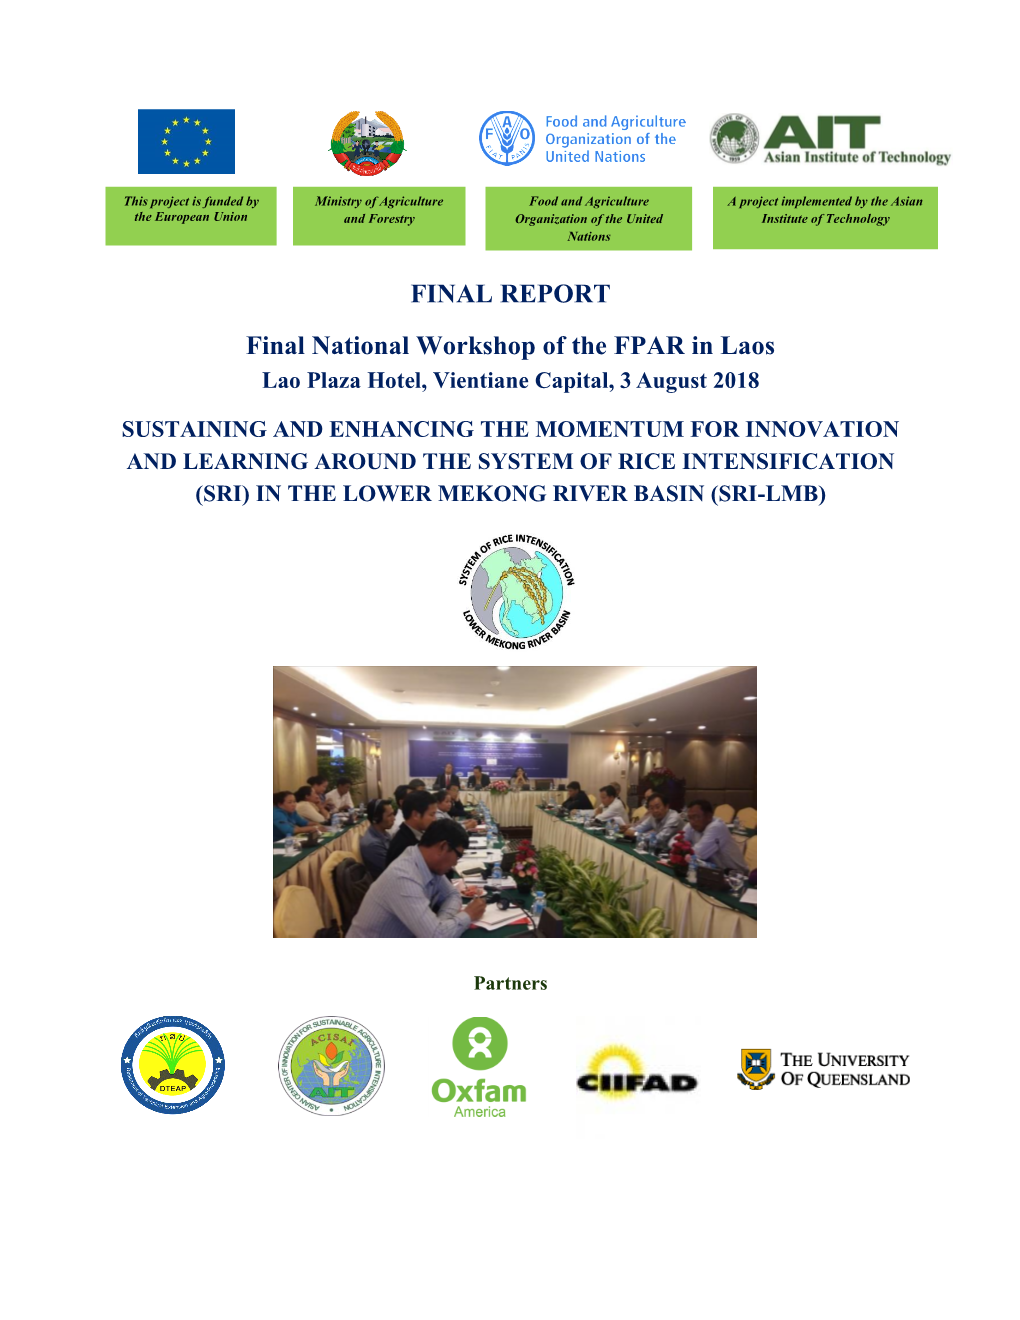 Final National Workshop of FPAR in Laos 2018